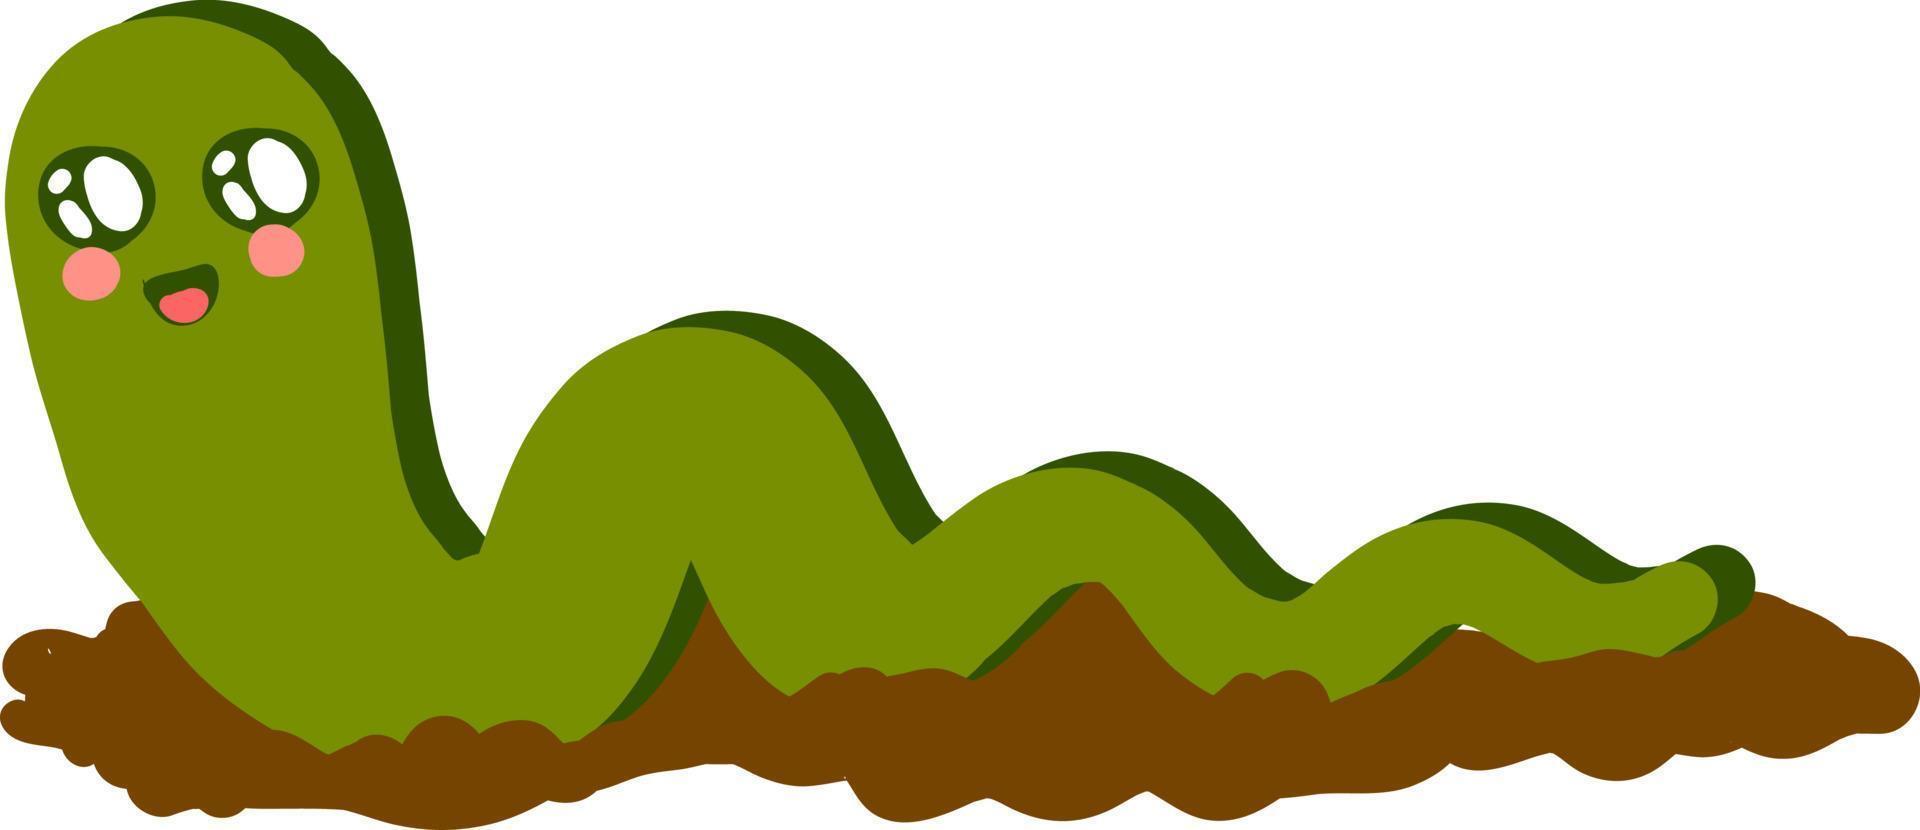 Lindo gusano verde, ilustración, vector sobre fondo blanco.